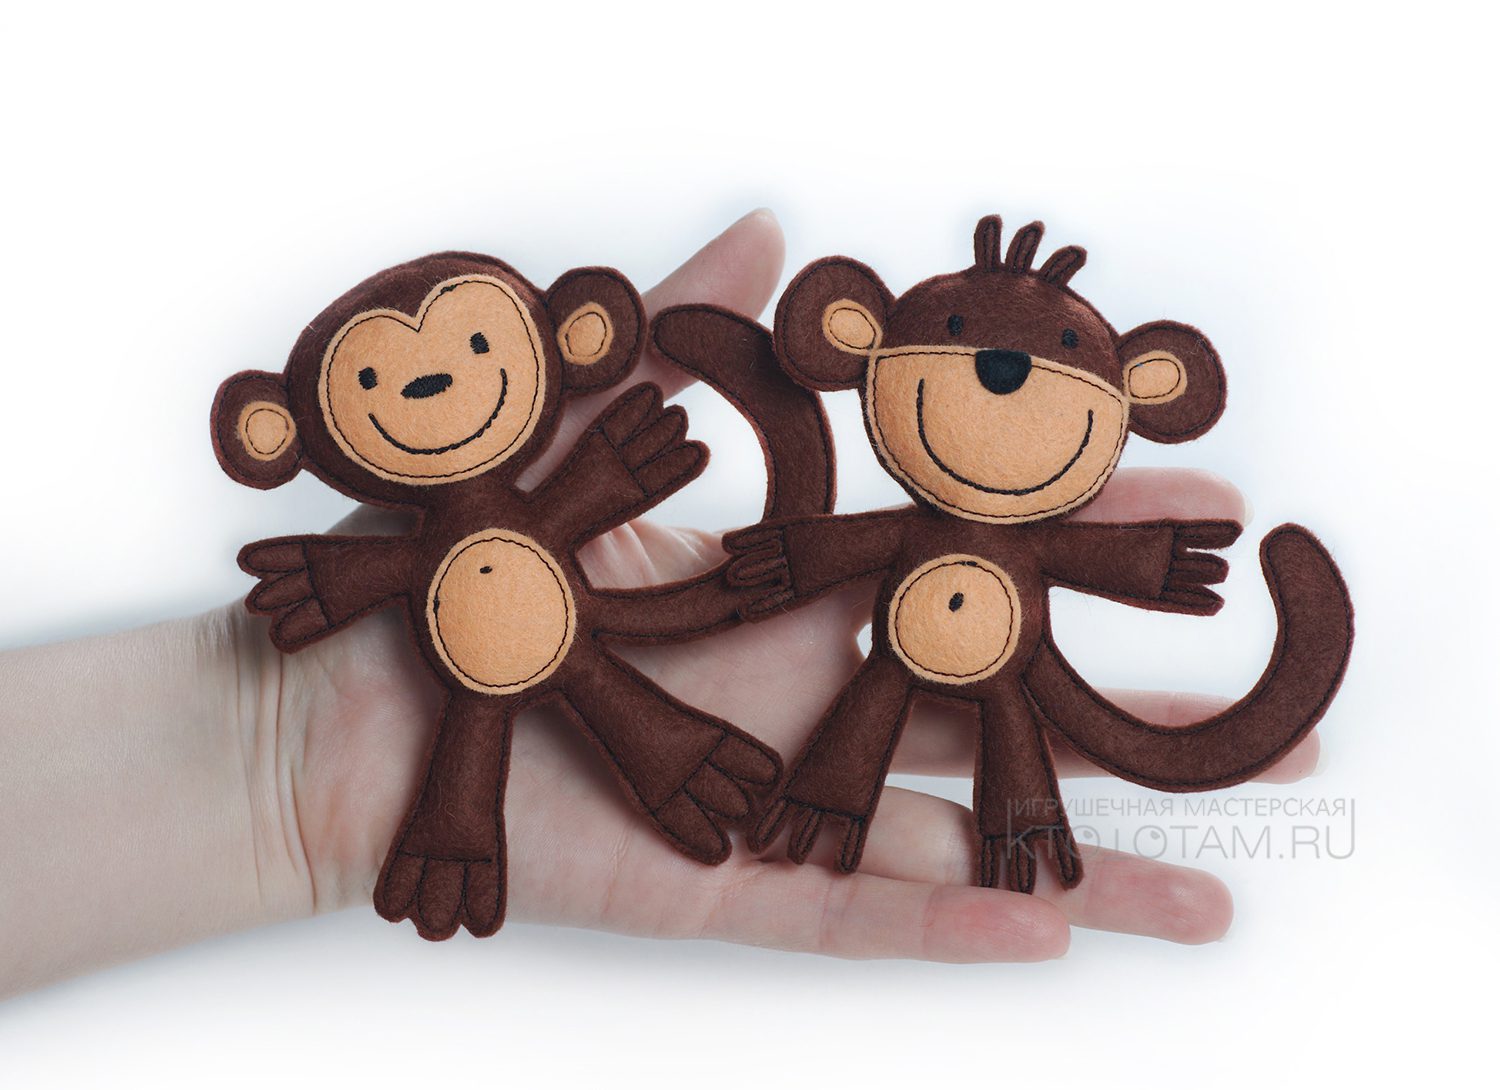 Новогодняя игрушка обезьянка на елку, из лампочки